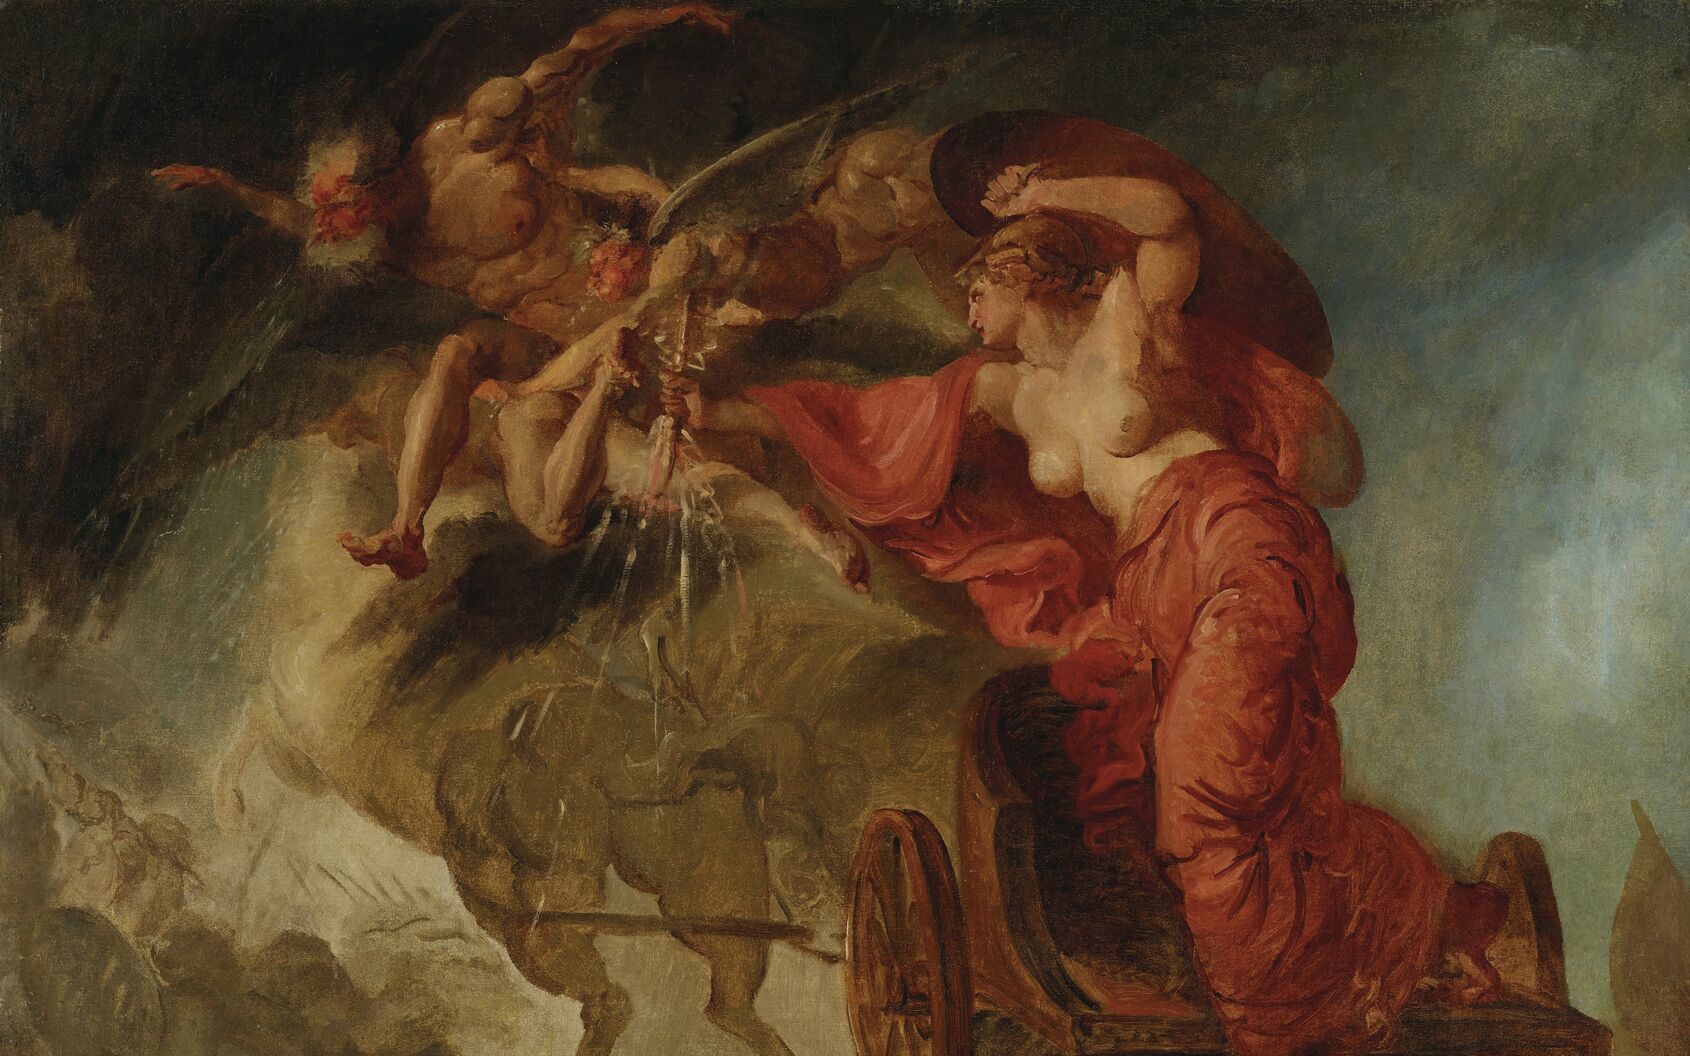 Målning där en kvinna stiger av sin vagn, dragen av hästar. I sin ena hand håller hon en sköld och i den andra en blixtrande Zeus-ljung. Över henne svävar en man (Nordanvinden), som är åtföljd av bevingade zefyrer ur vilkas munnar det kommer snöflingor.